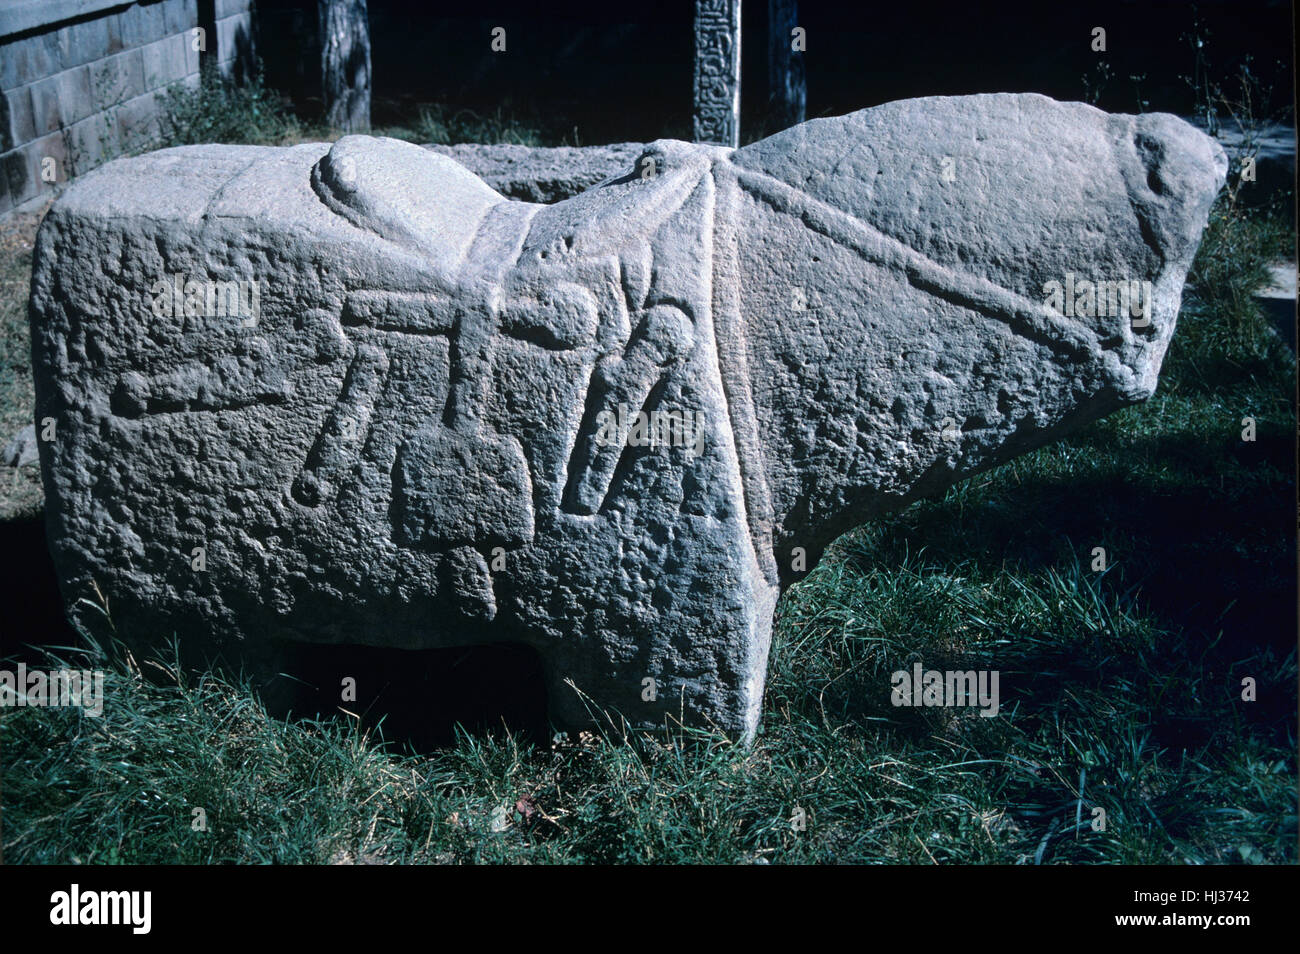 Cheval en pierre taillée, sculptée avec selle, étriers et faisceau, un Urartian sculptures funéraires de l'âge du Fer Urarta Civilisations (c8th-c6thBC), autour de Van Turquie Banque D'Images